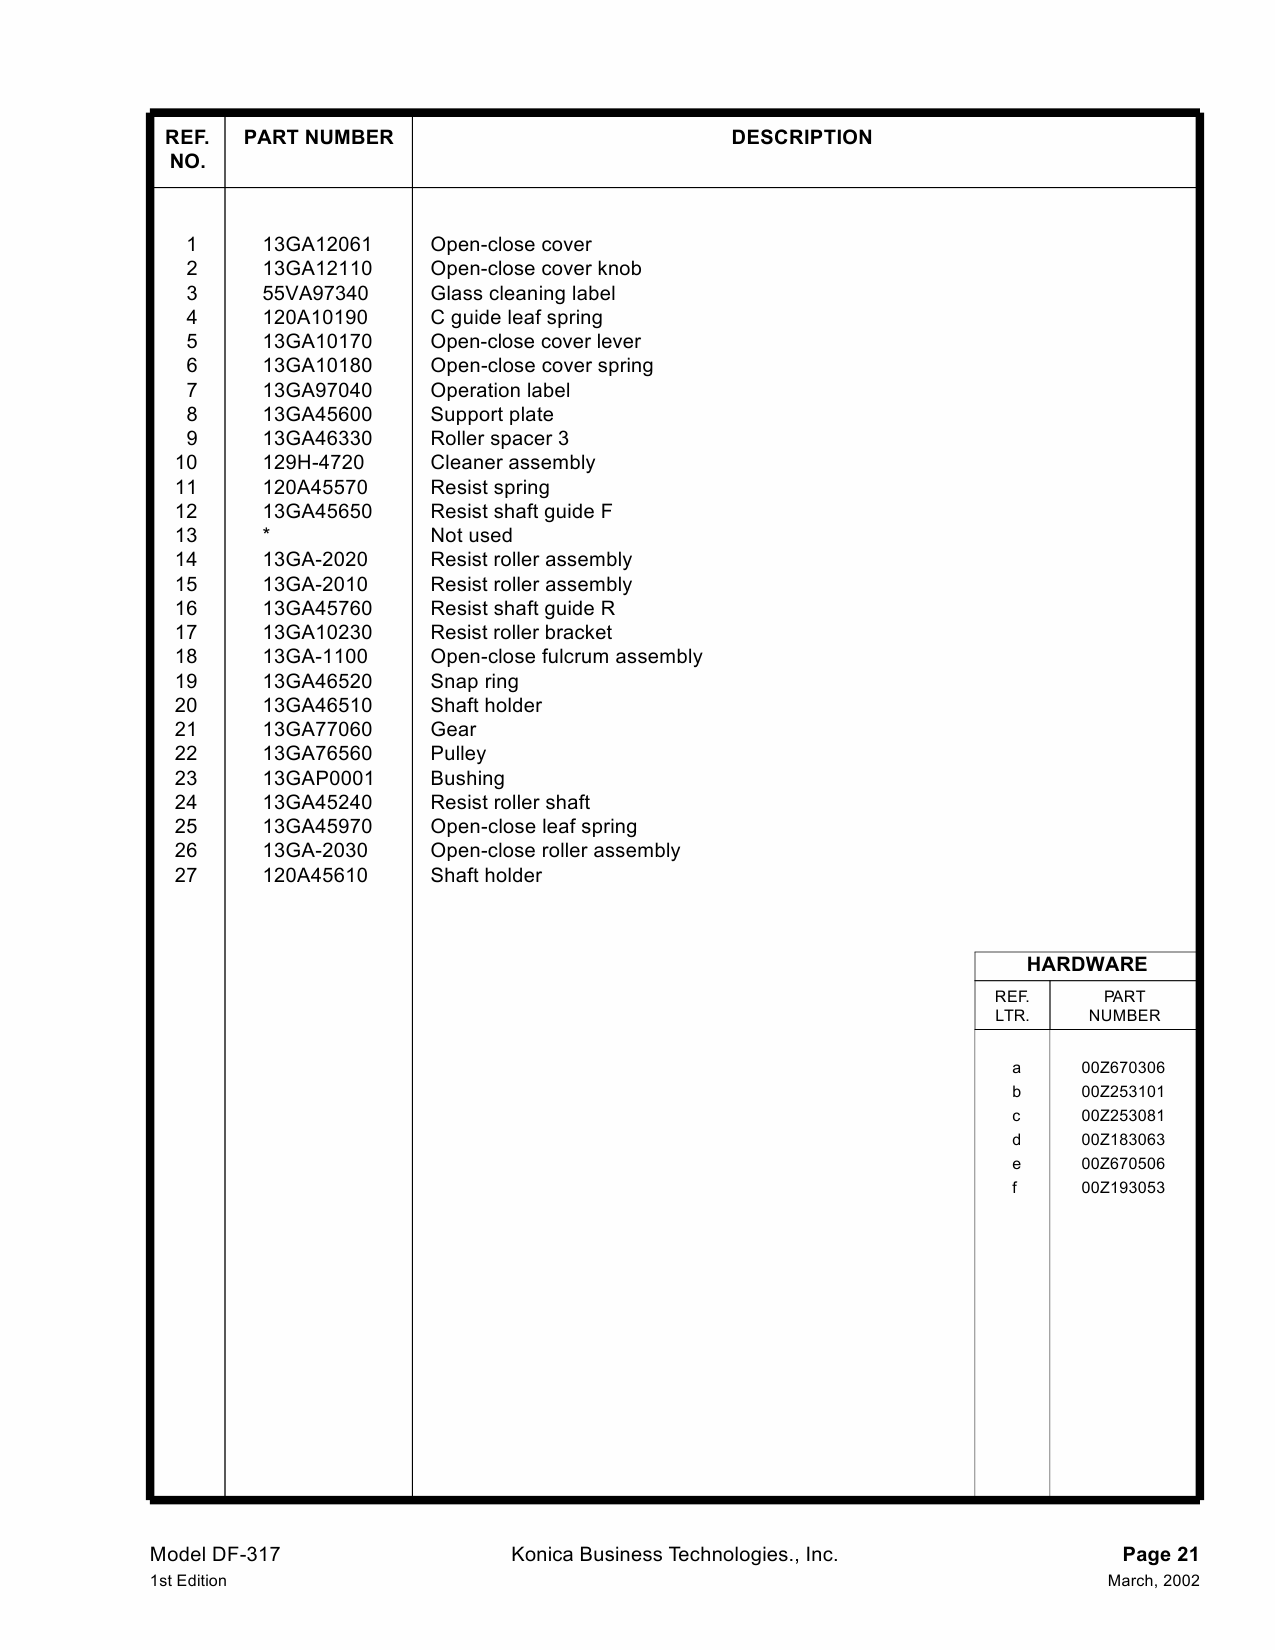 Konica-Minolta Options DF-317 Parts Manual-2